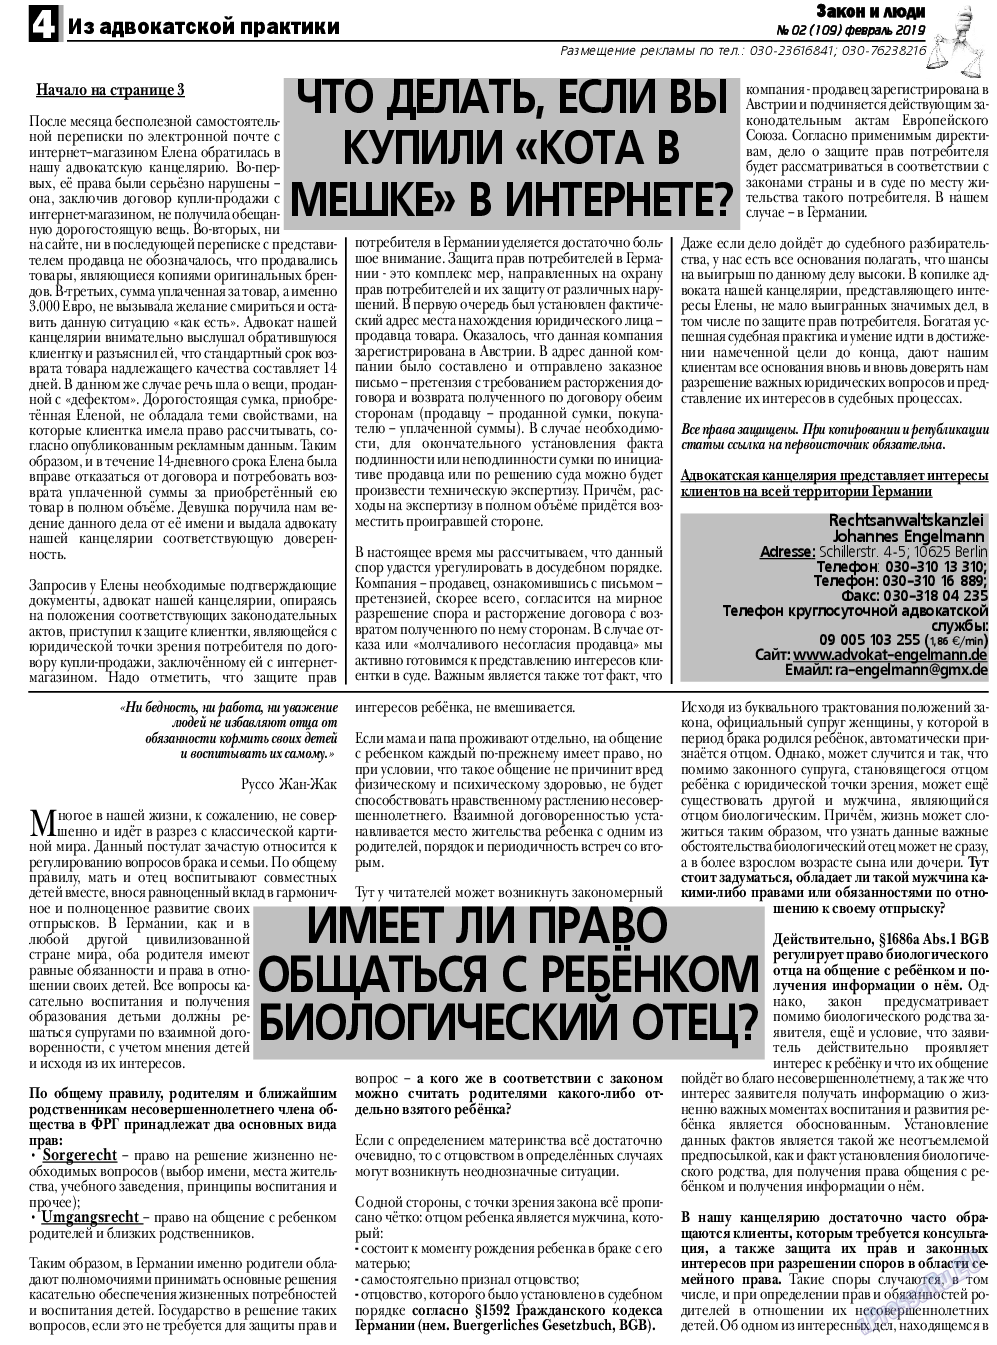 Закон и люди, газета. 2019 №2 стр.4